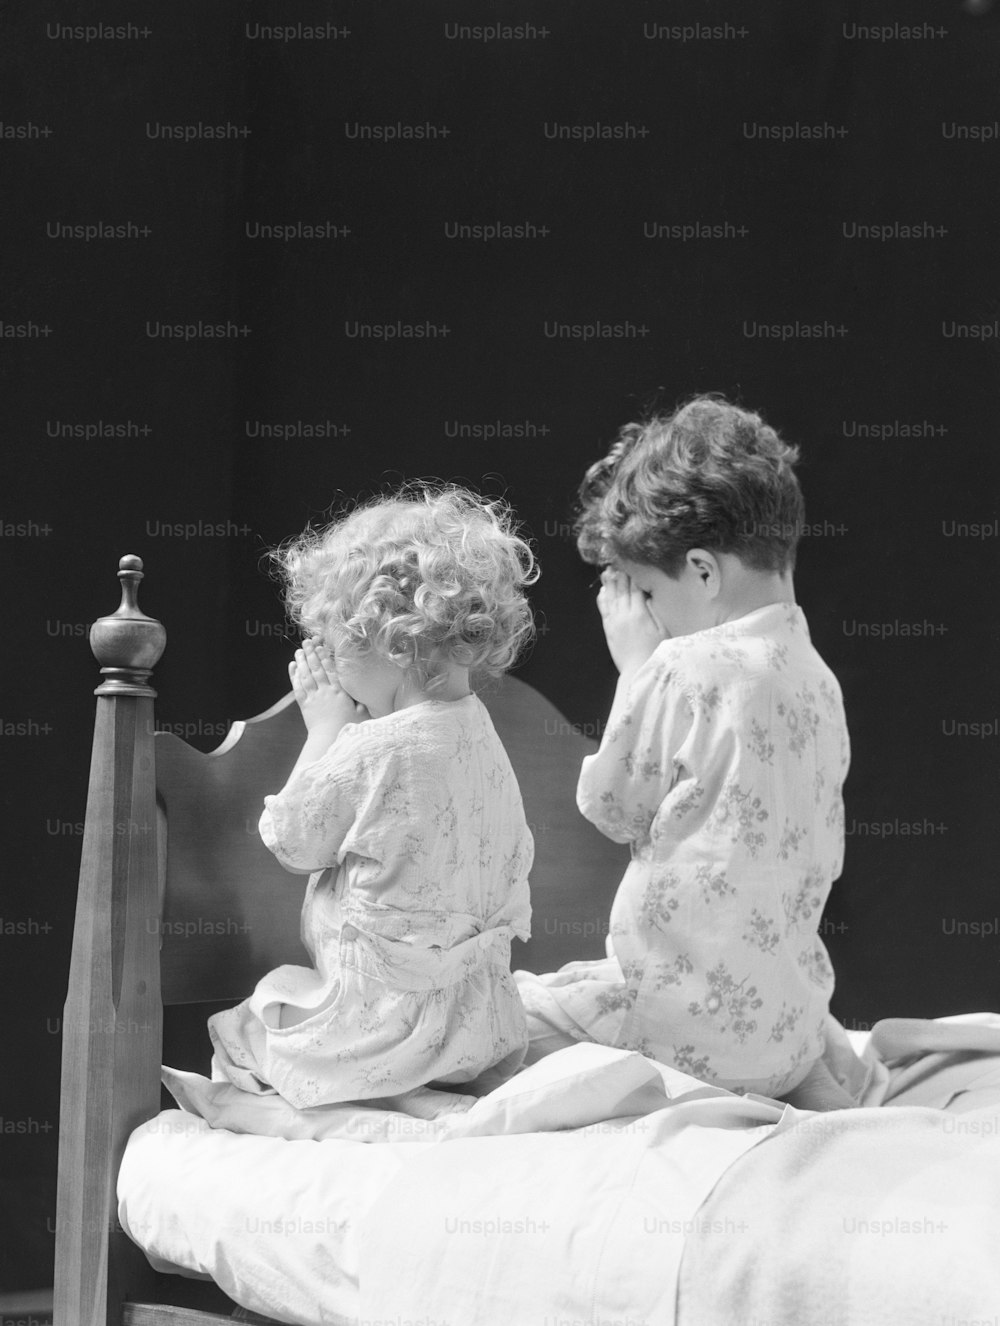 ÉTATS-UNIS - Circa 1930s : Garçon et fille agenouillés près du lit en train de prier, vue arrière.